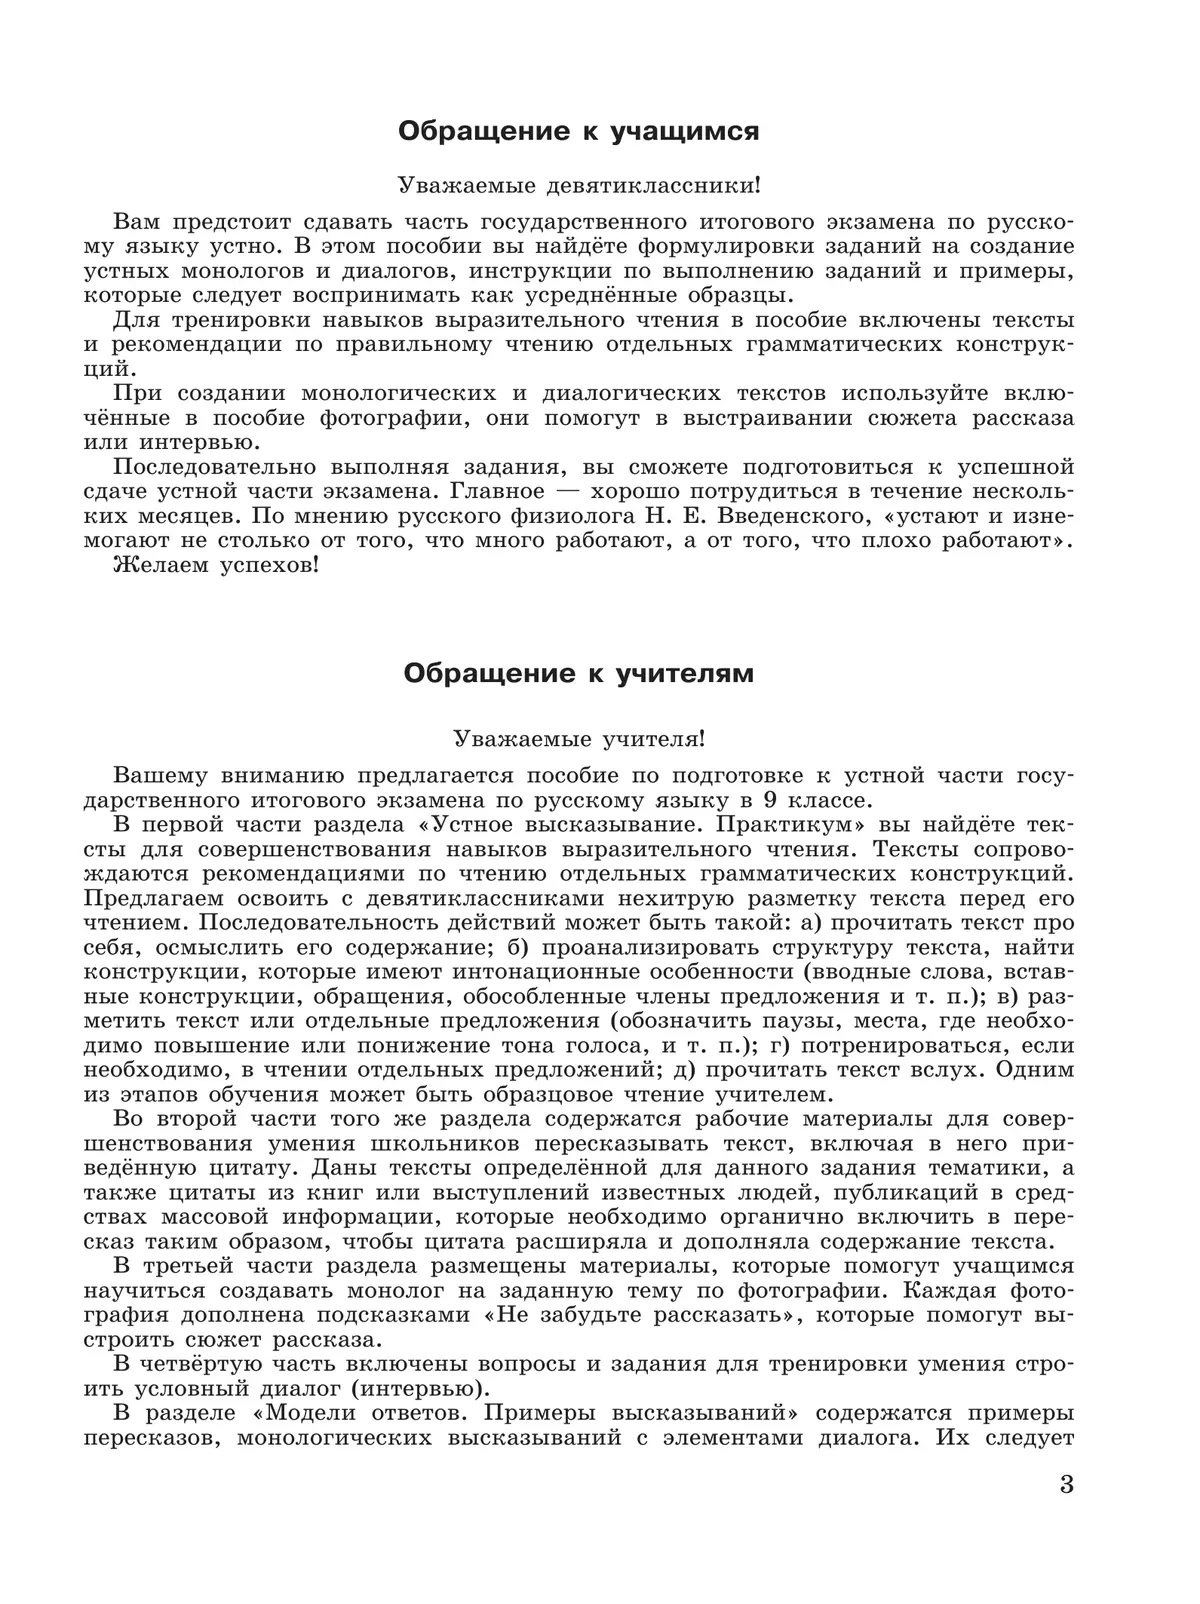 Русский язык. Основной государственный экзамен. Готовимся к устной части 6